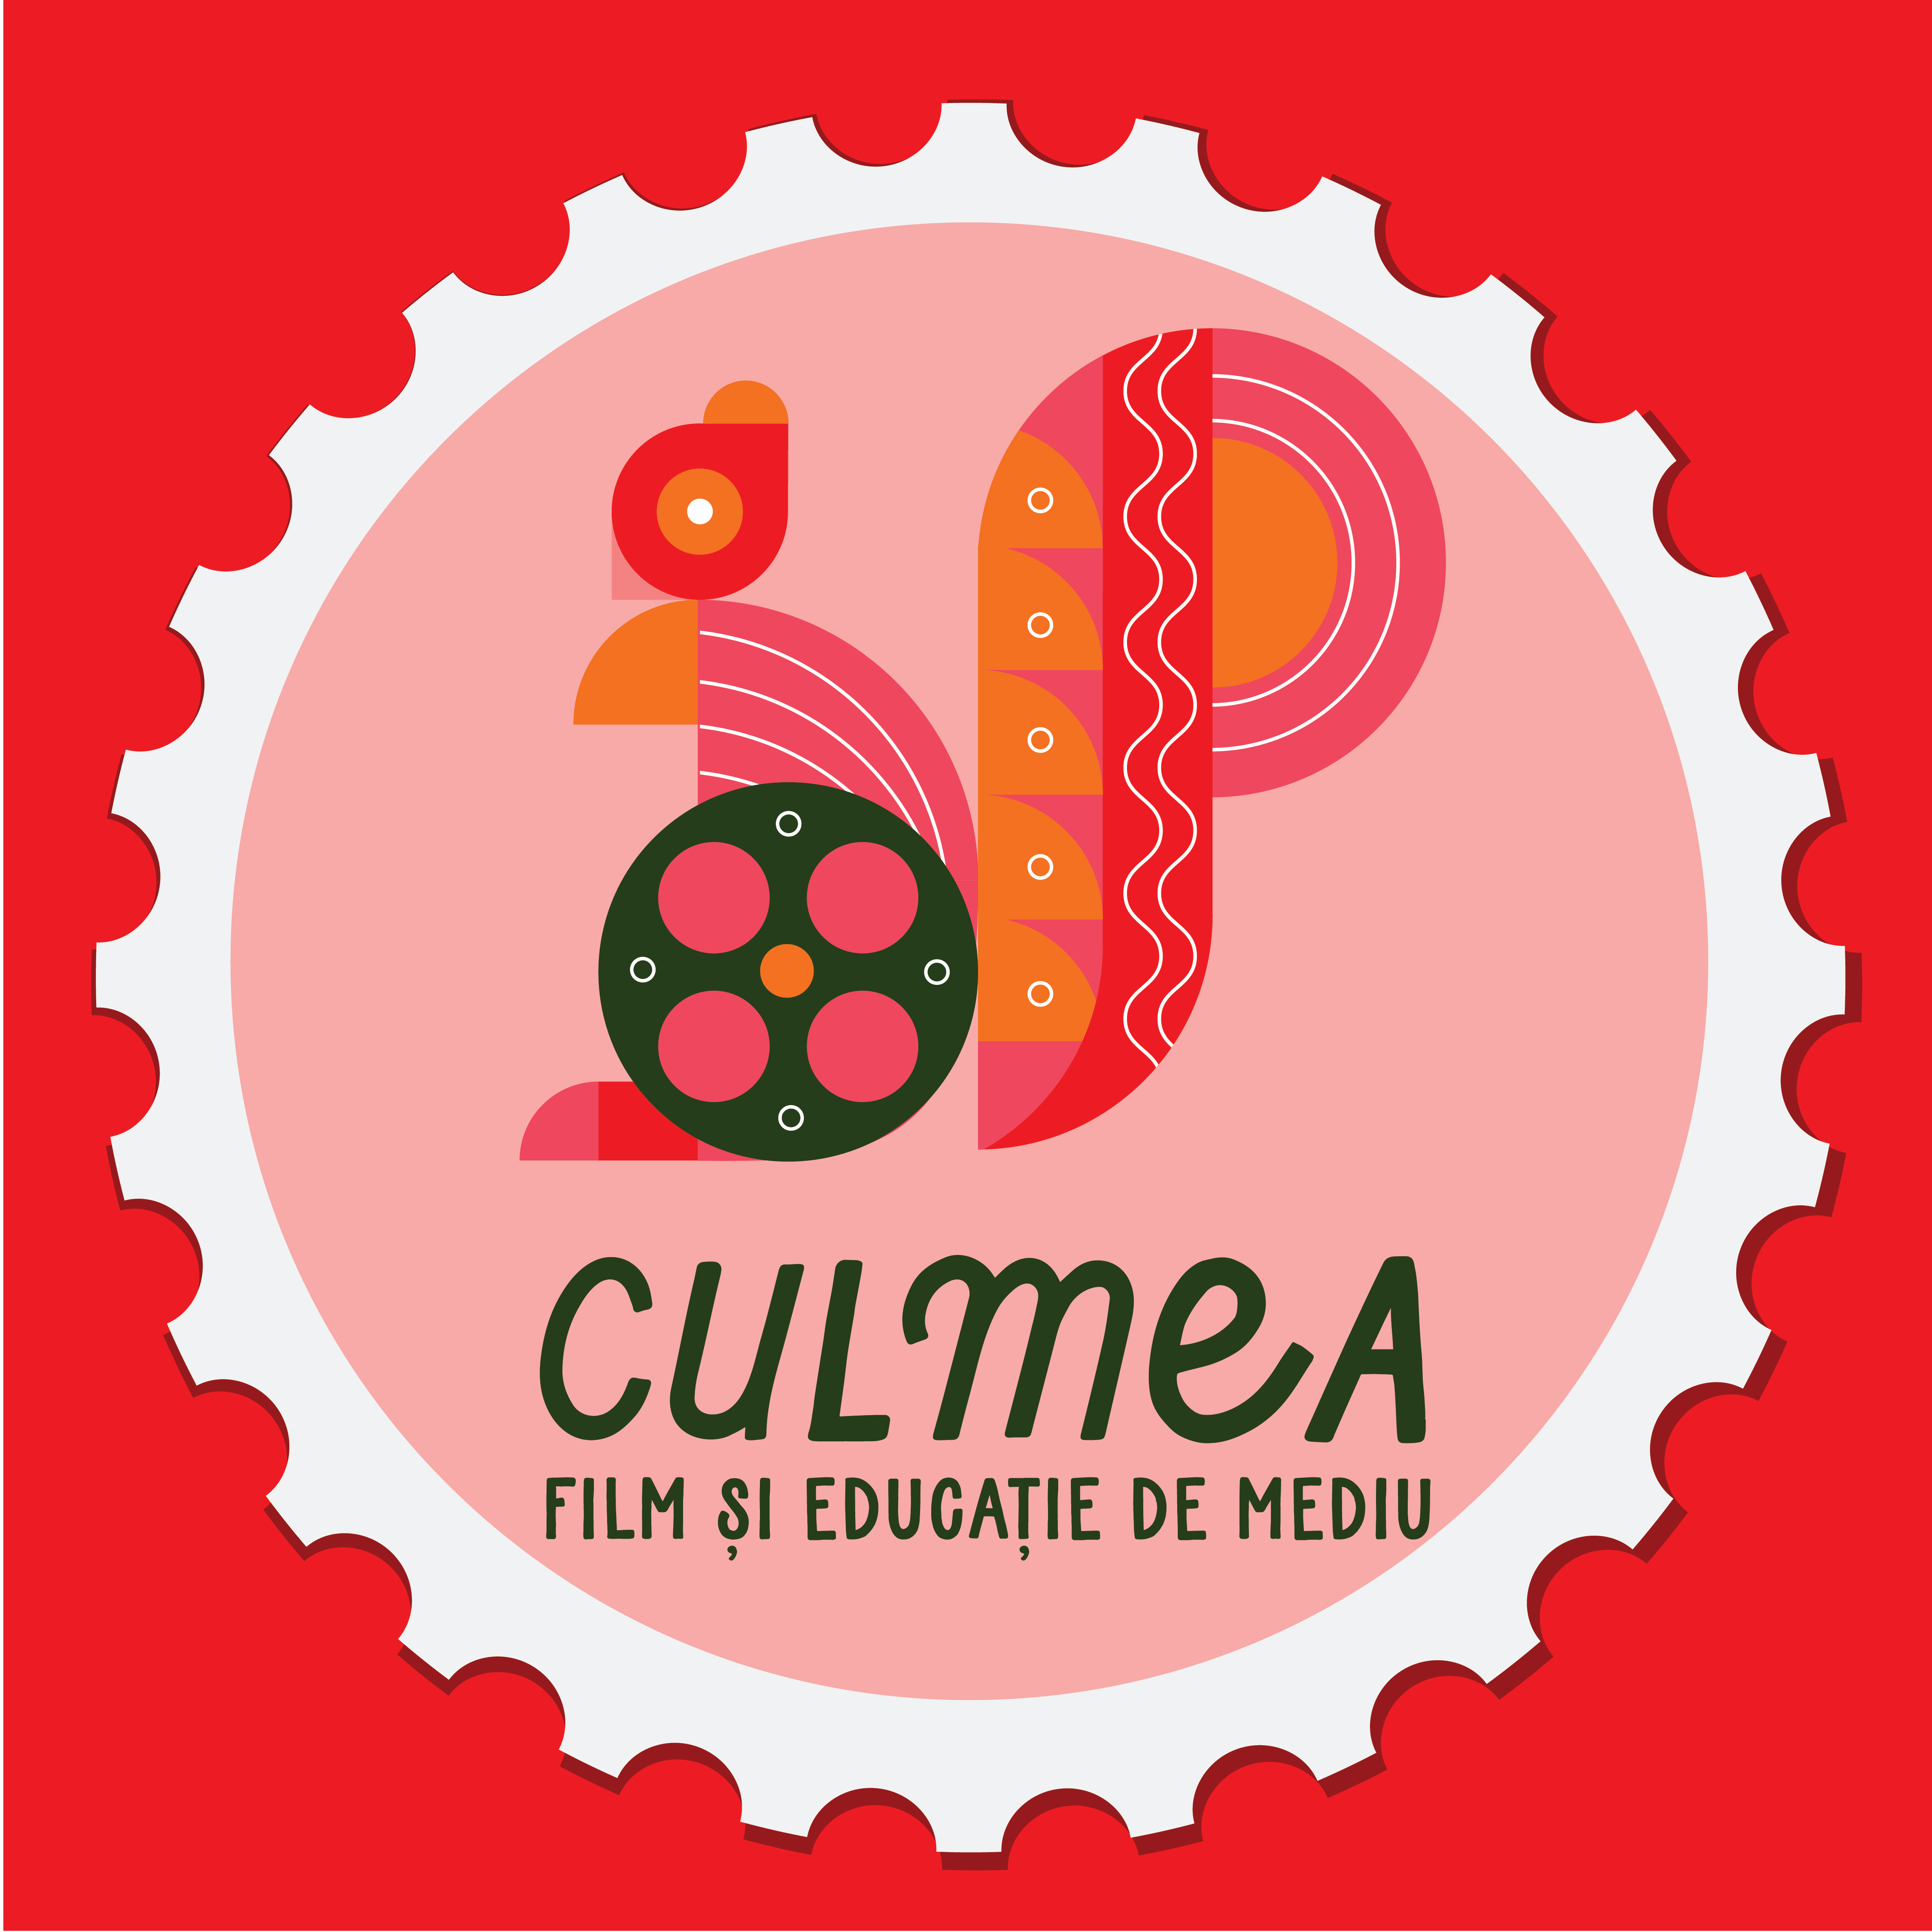 Festivalul CULMEA: Film și educație de mediu